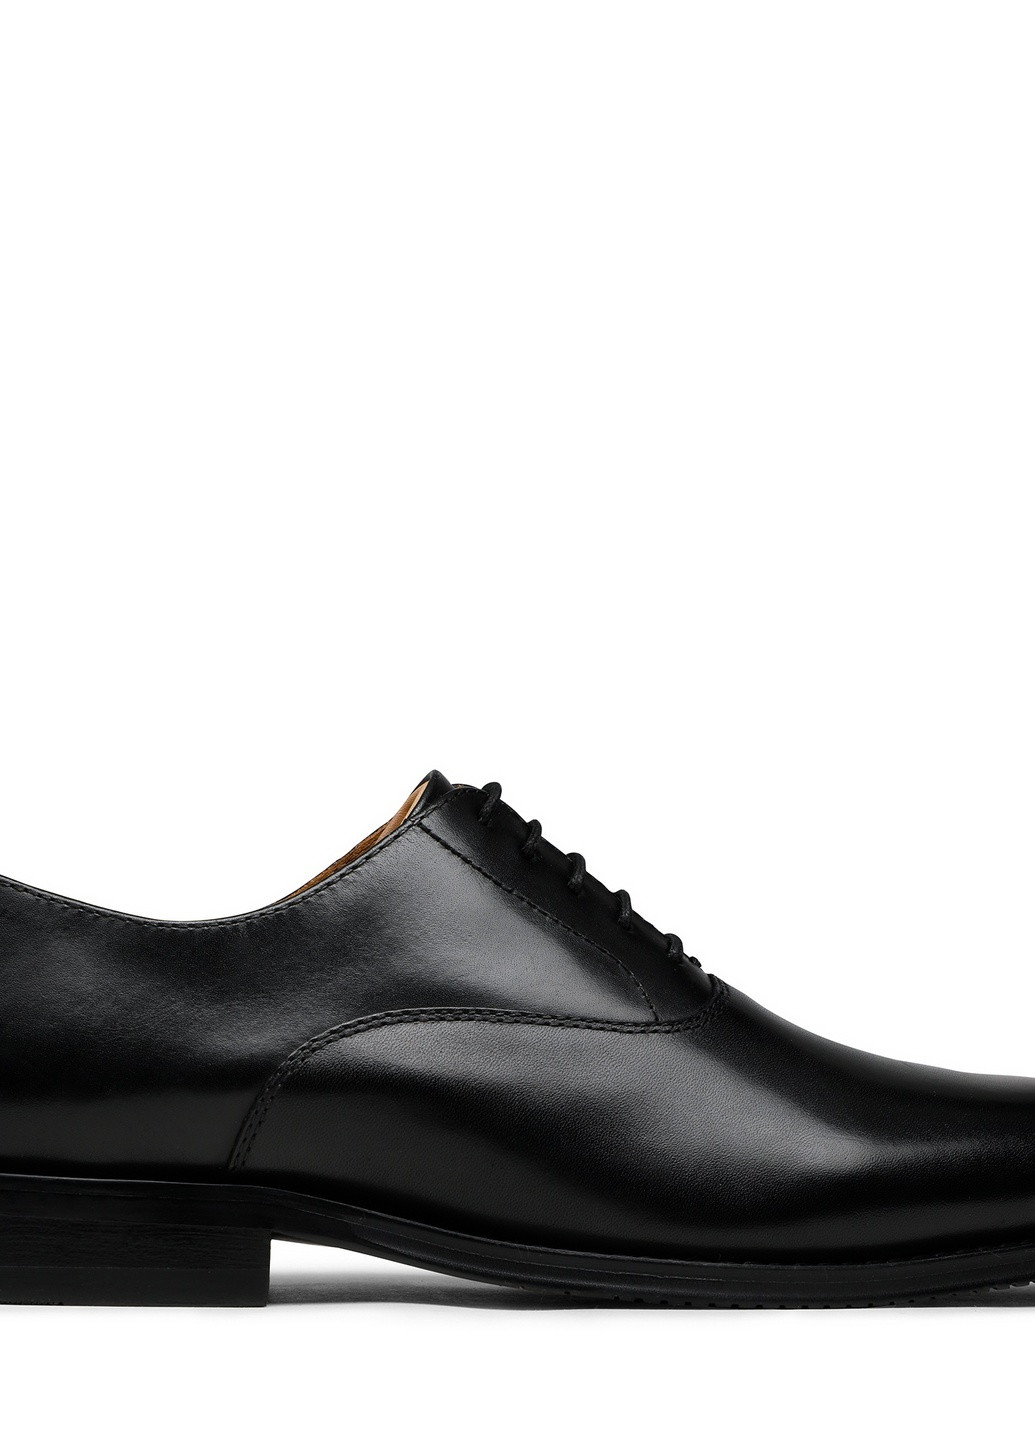 Черные осенние туфли flavio-01 122am Gino Rossi